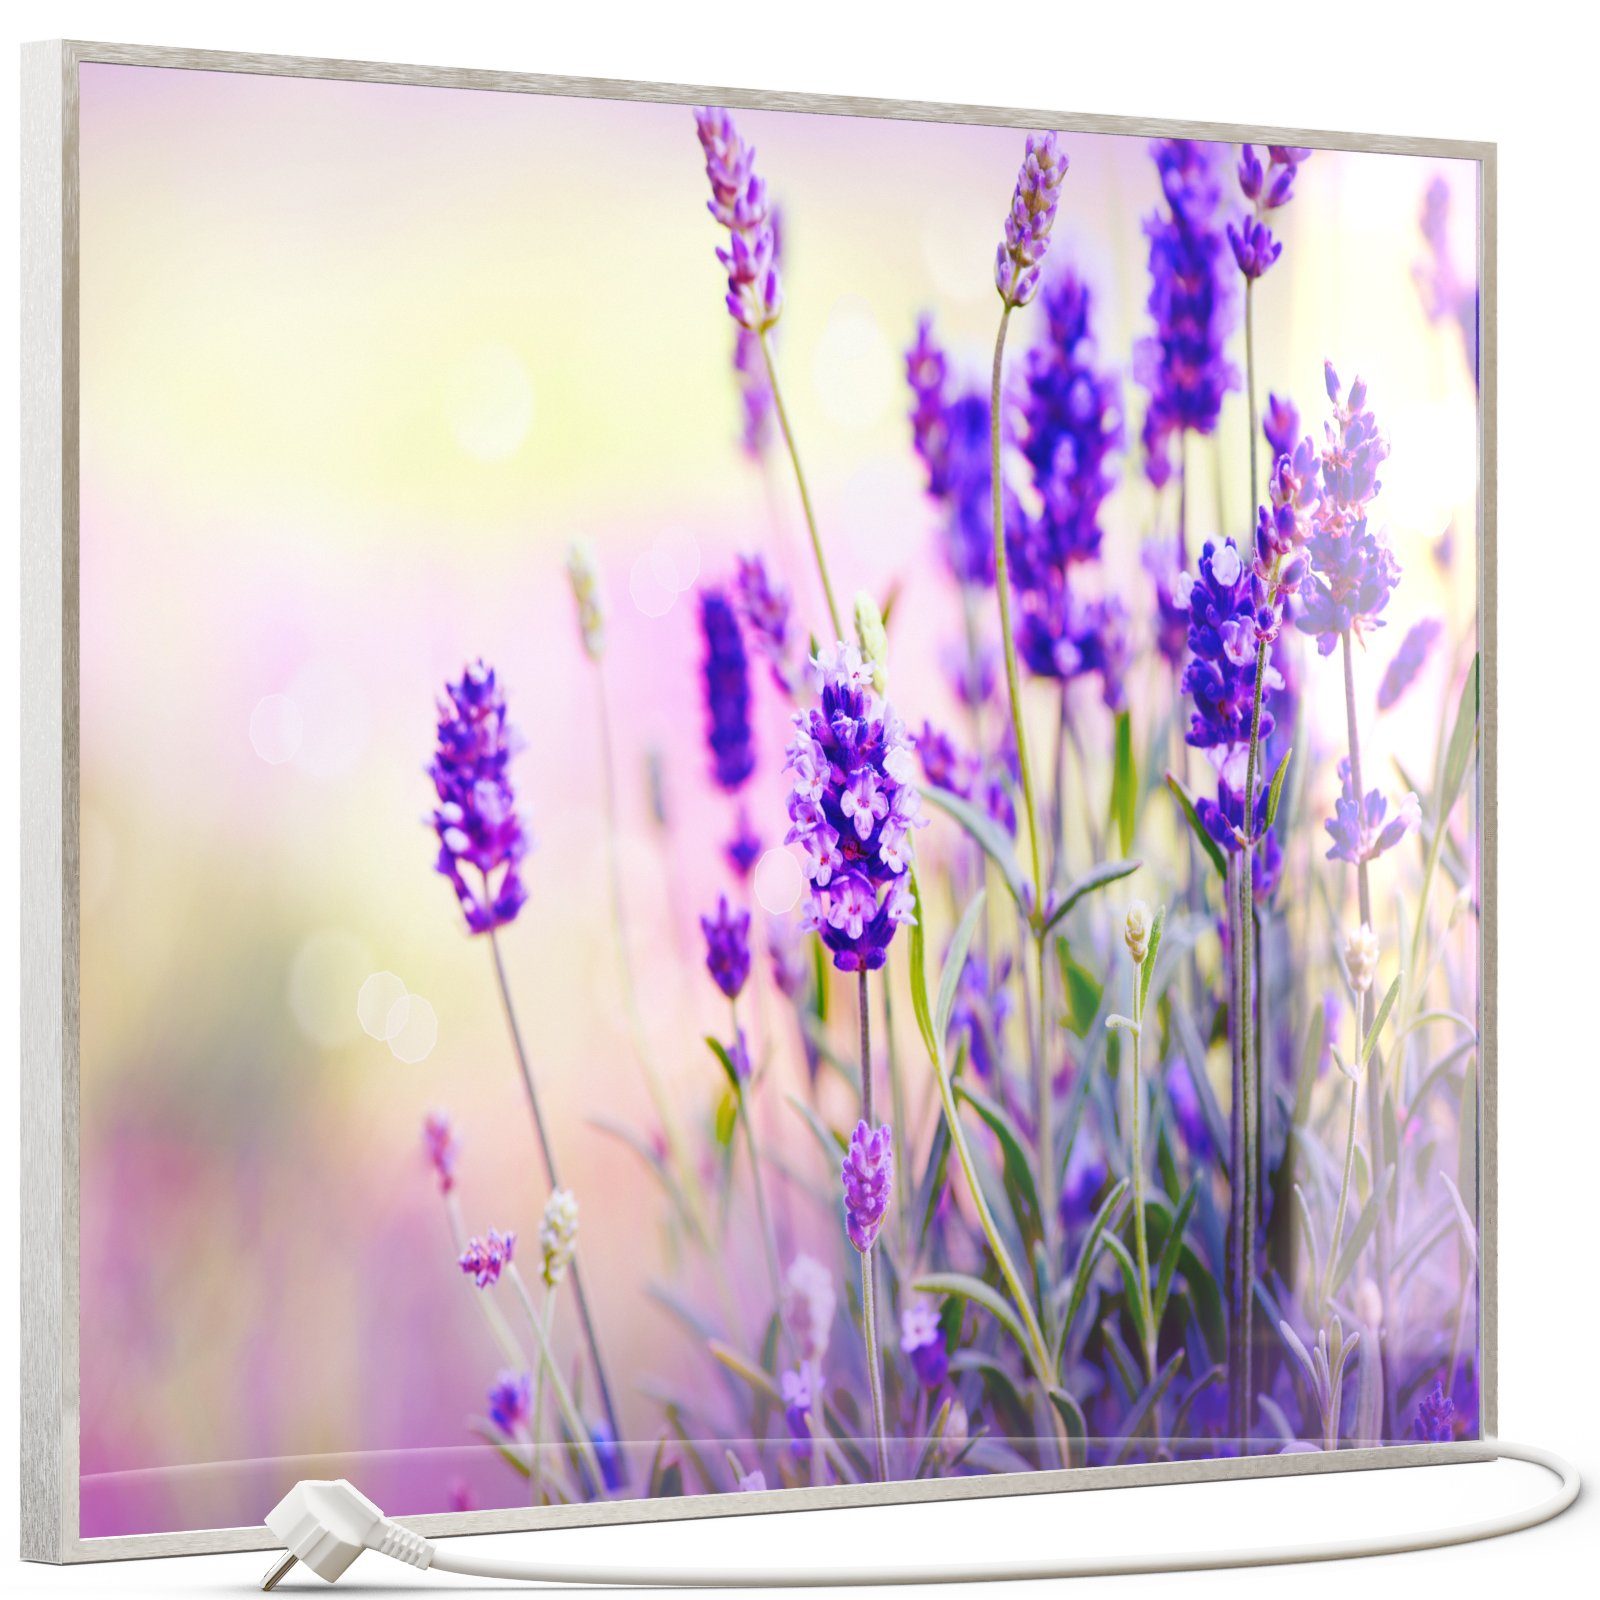 STEINFELD Heizsysteme Infrarotheizung, Glas Bild 350W-1200W, Inklusive Thermostat, 061 Lavendel Silber